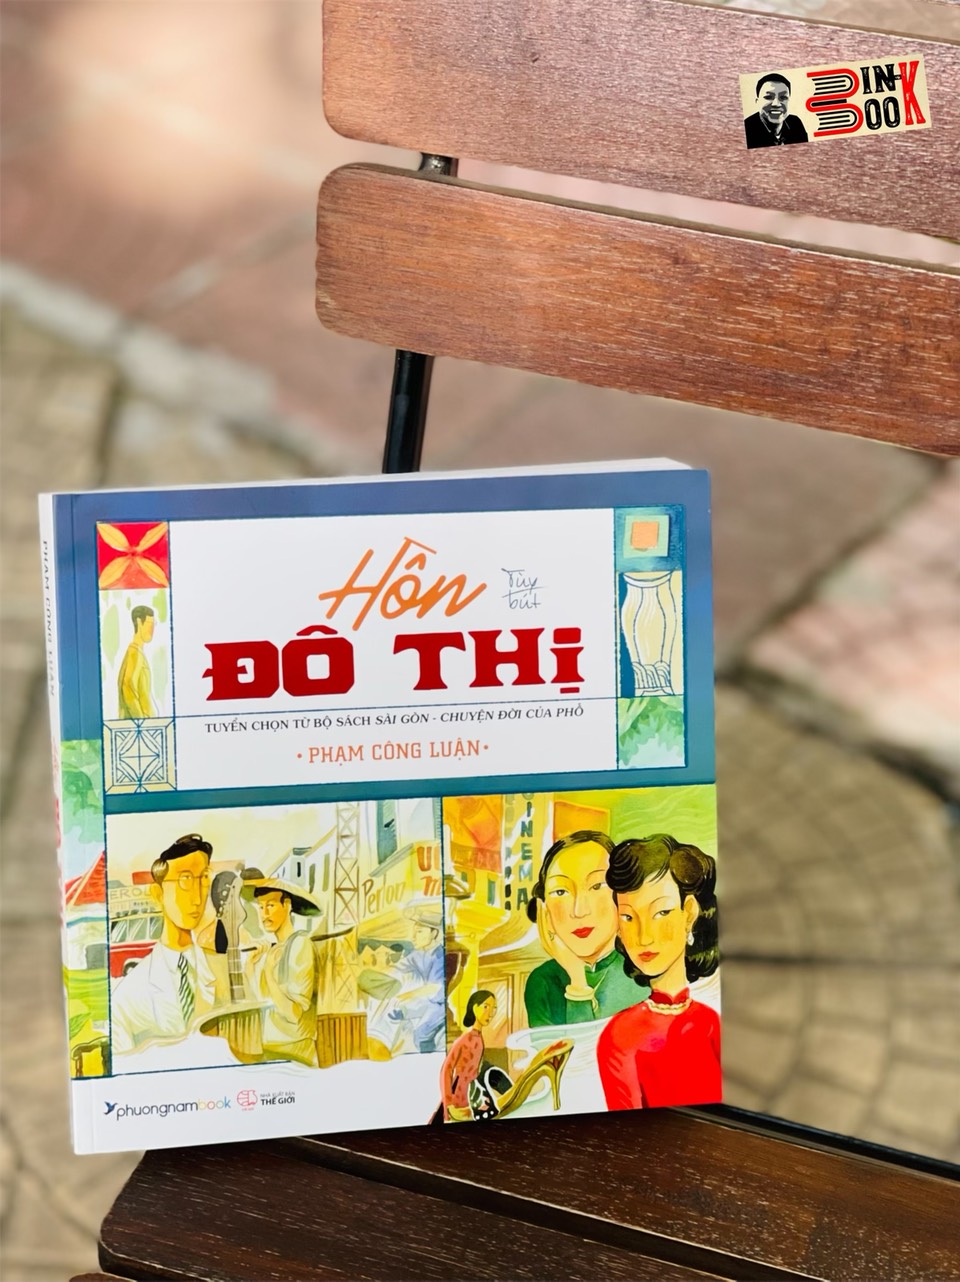 HỒN ĐÔ THỊ - Tuyển chọn từ bộ sách Sài Gòn - chuyện đời của phố – Phạm Công Luận - Kim Duẩn minh họa – Phương Nam Book - NXB Thế Giới (bìa mềm)